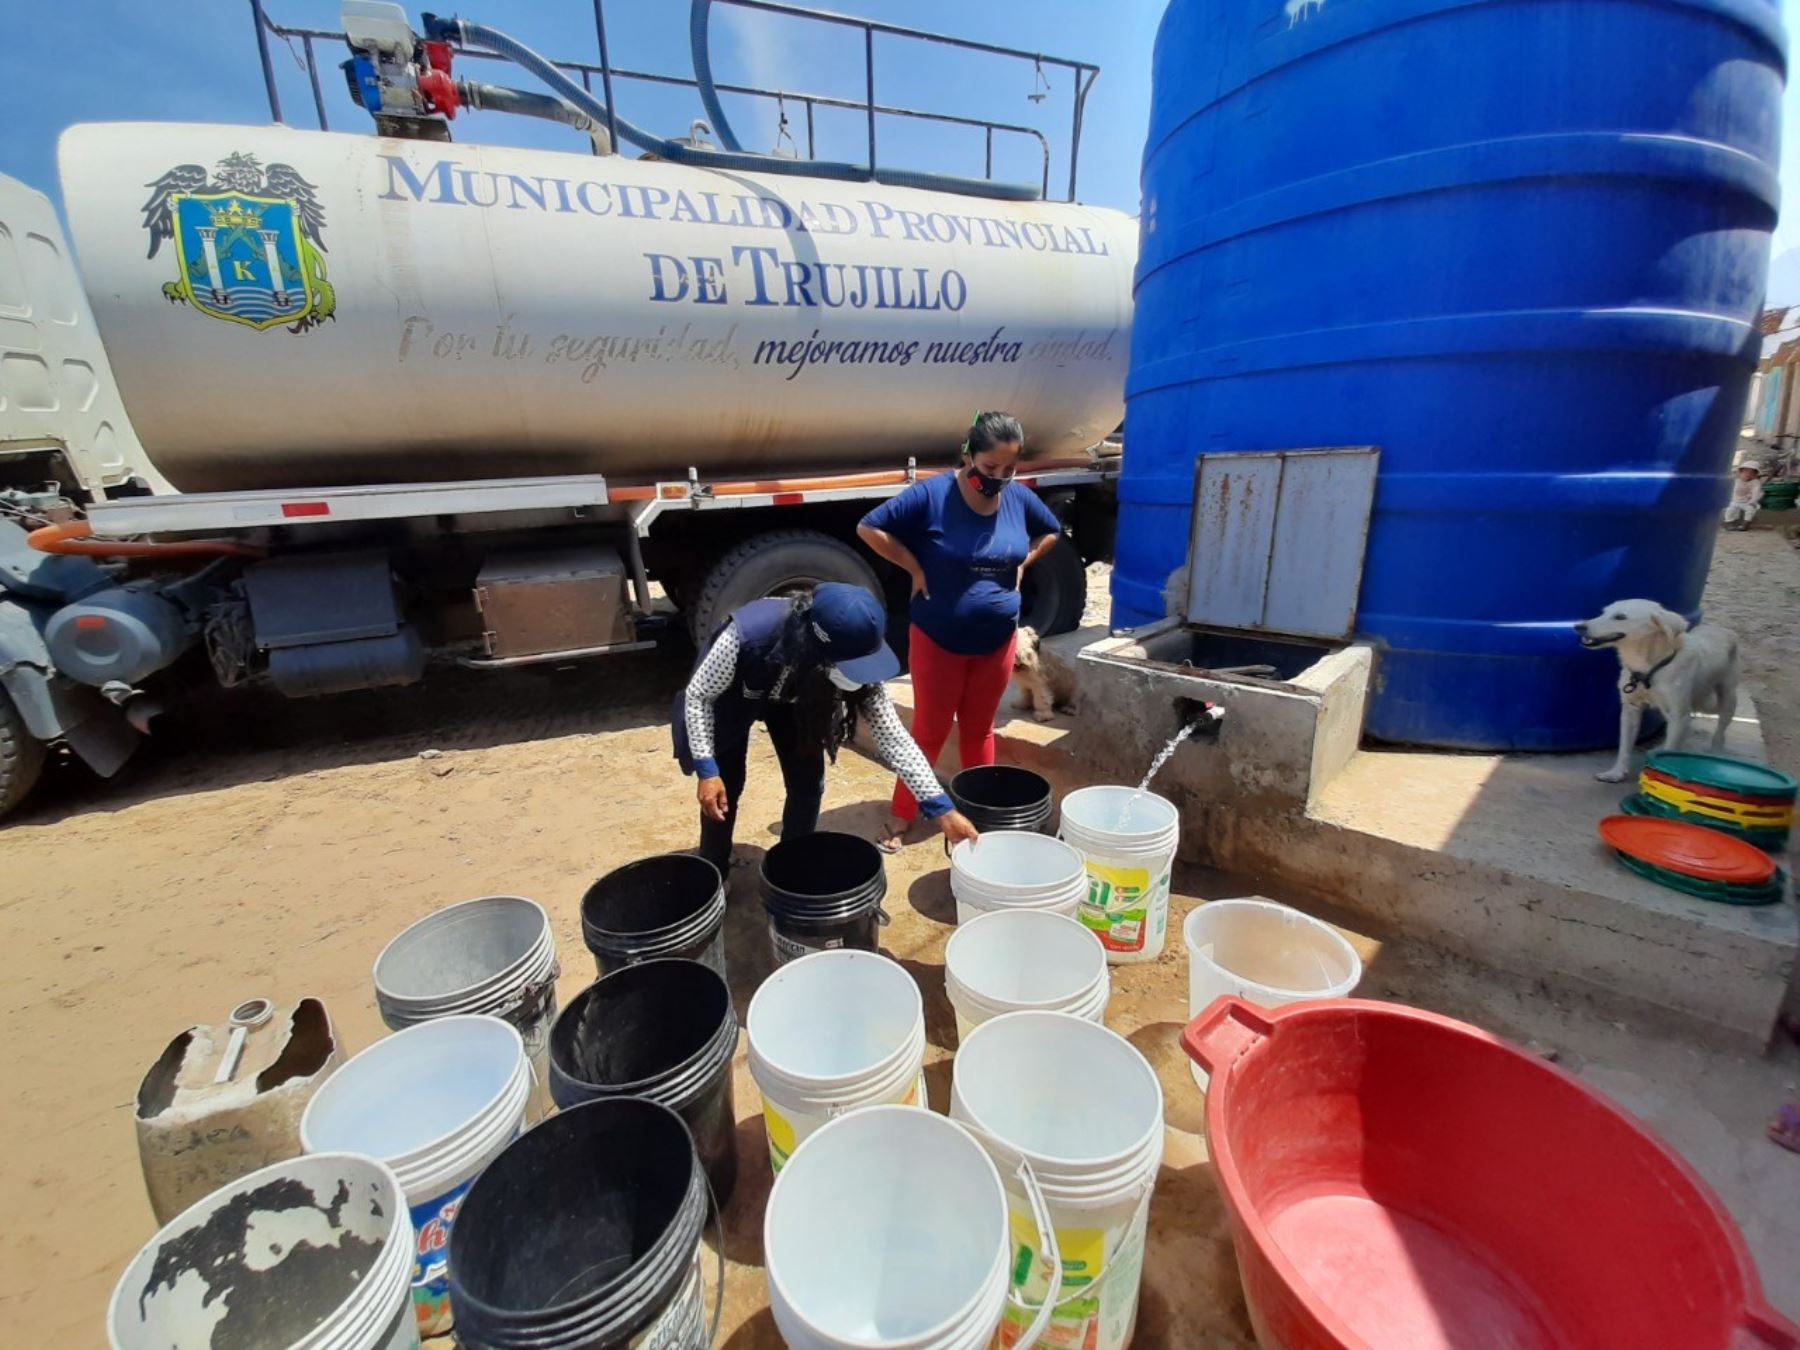 Municipalidad deTrujillo distribuirá más de 13 millones de litros de agua potable en zonas vulnerables de dicha provincia ubicada en La Libertad que carece de este vital servicio. ANDINA/Difusión